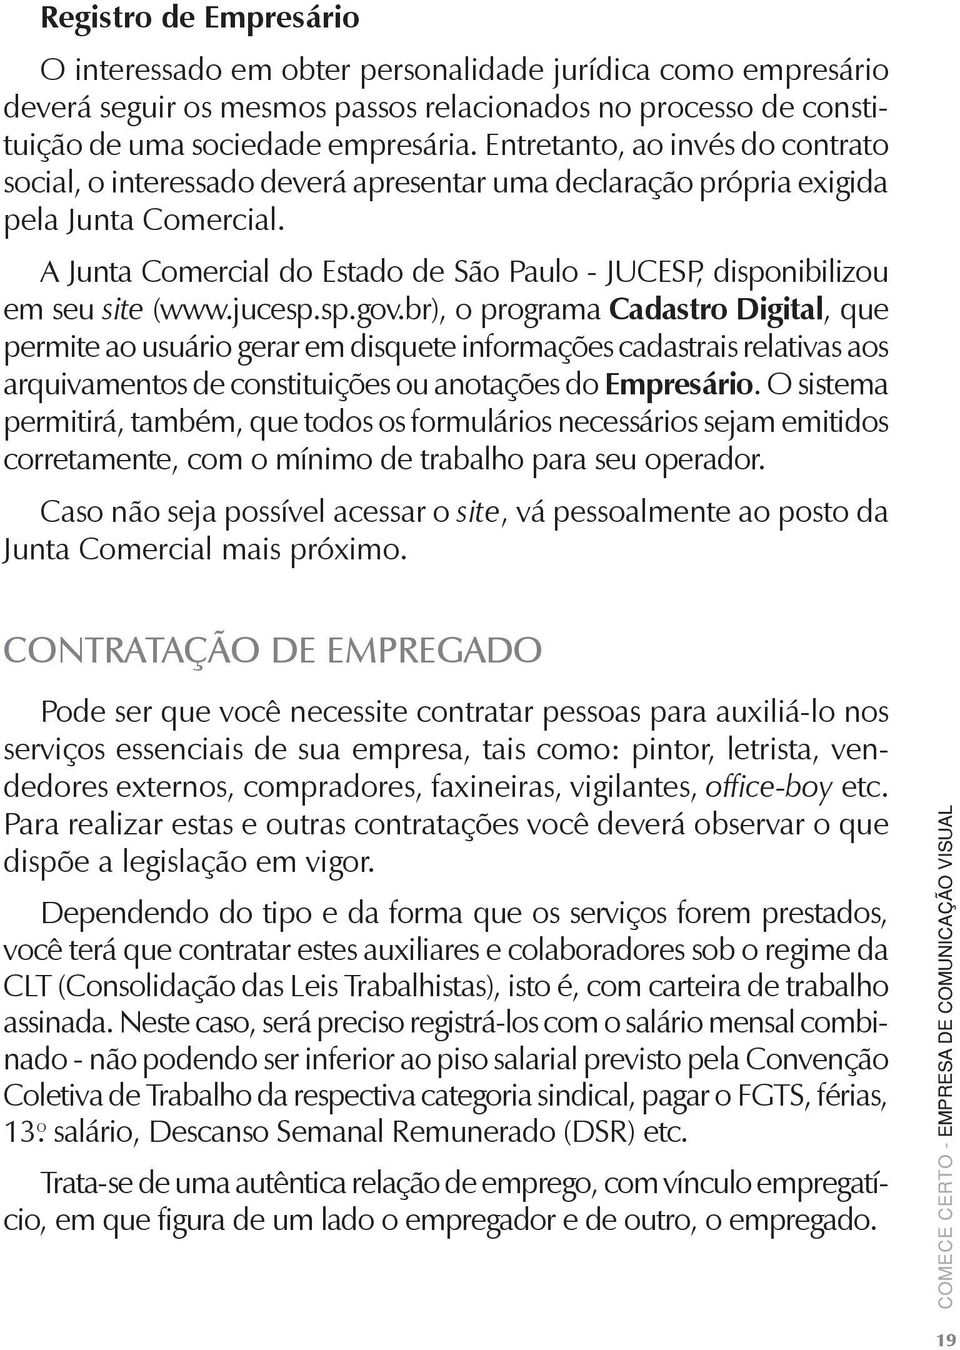 A Junta Comercial do Estado de São Paulo - JUCESP, disponibilizou em seu site (www.jucesp.sp.gov.